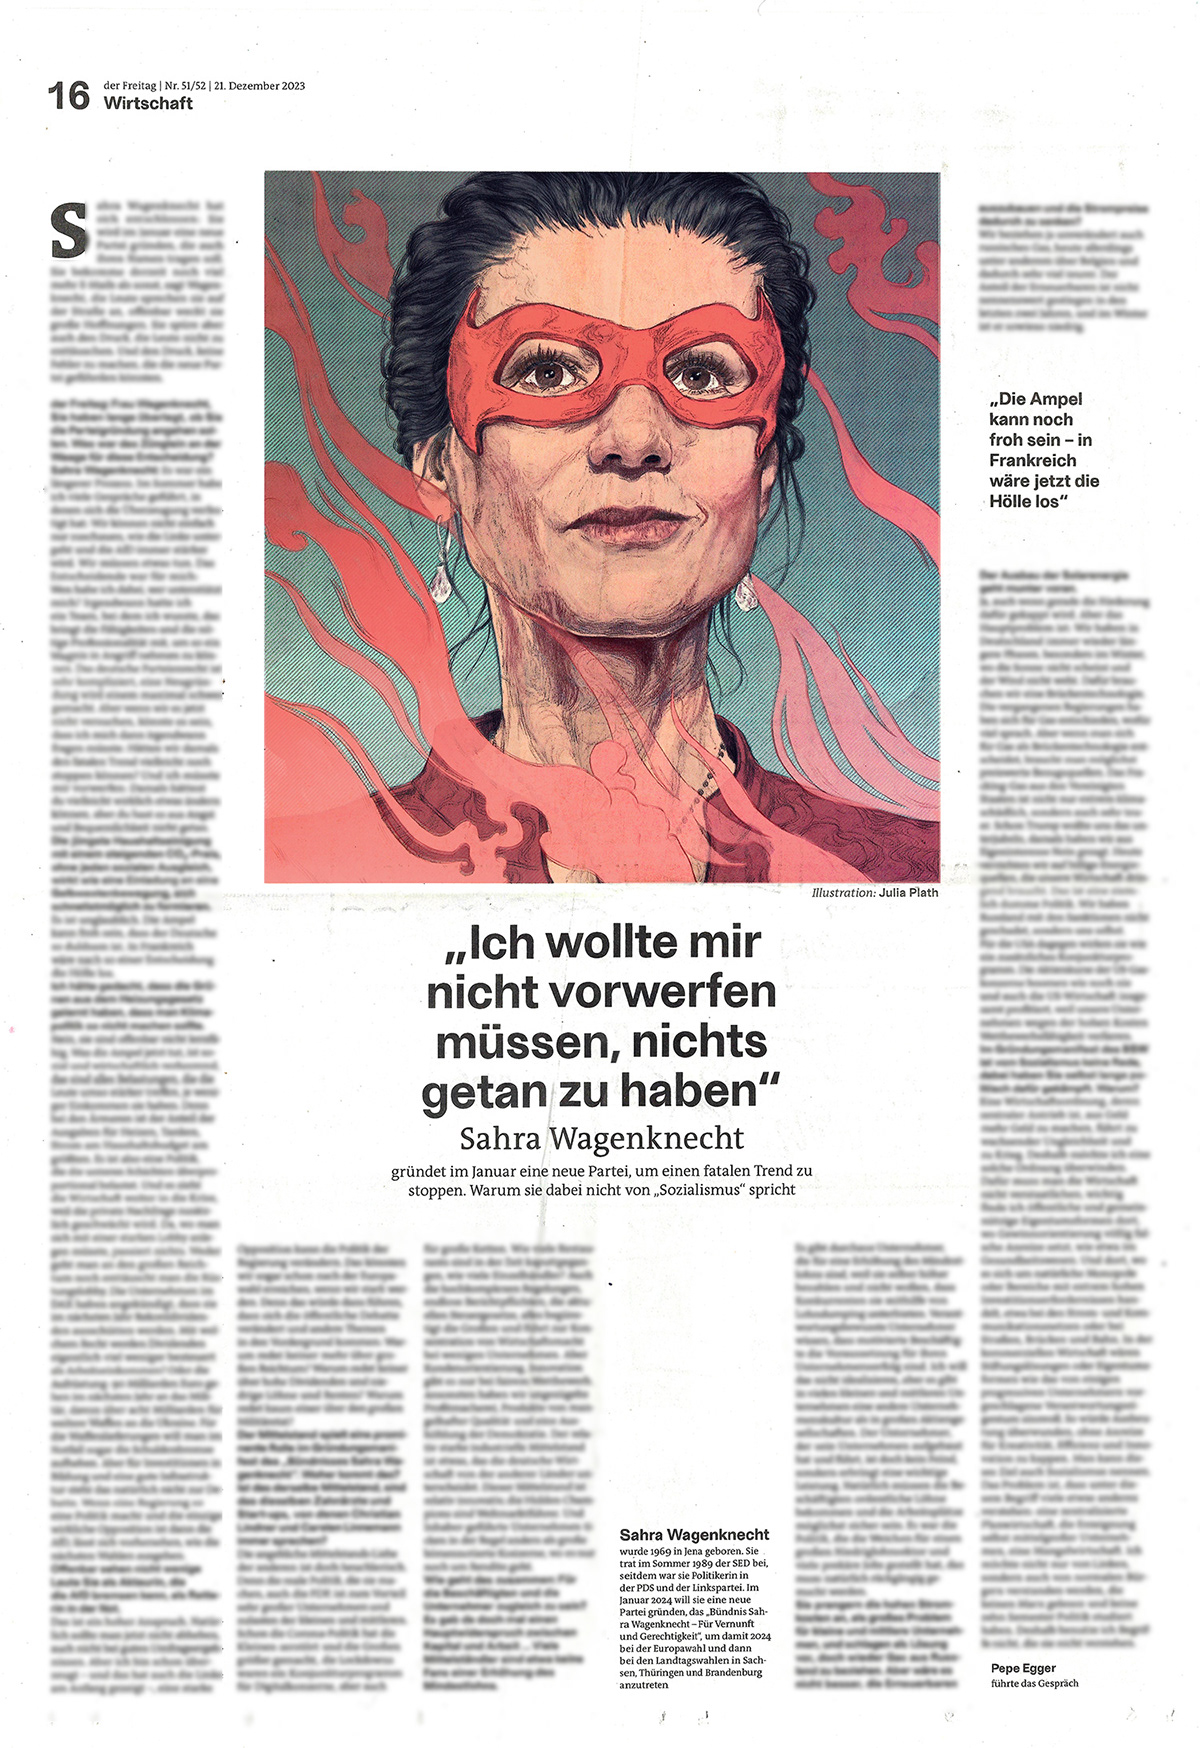 Editorial Illustration newspaper portrait DerFreitag sahrawagenknecht